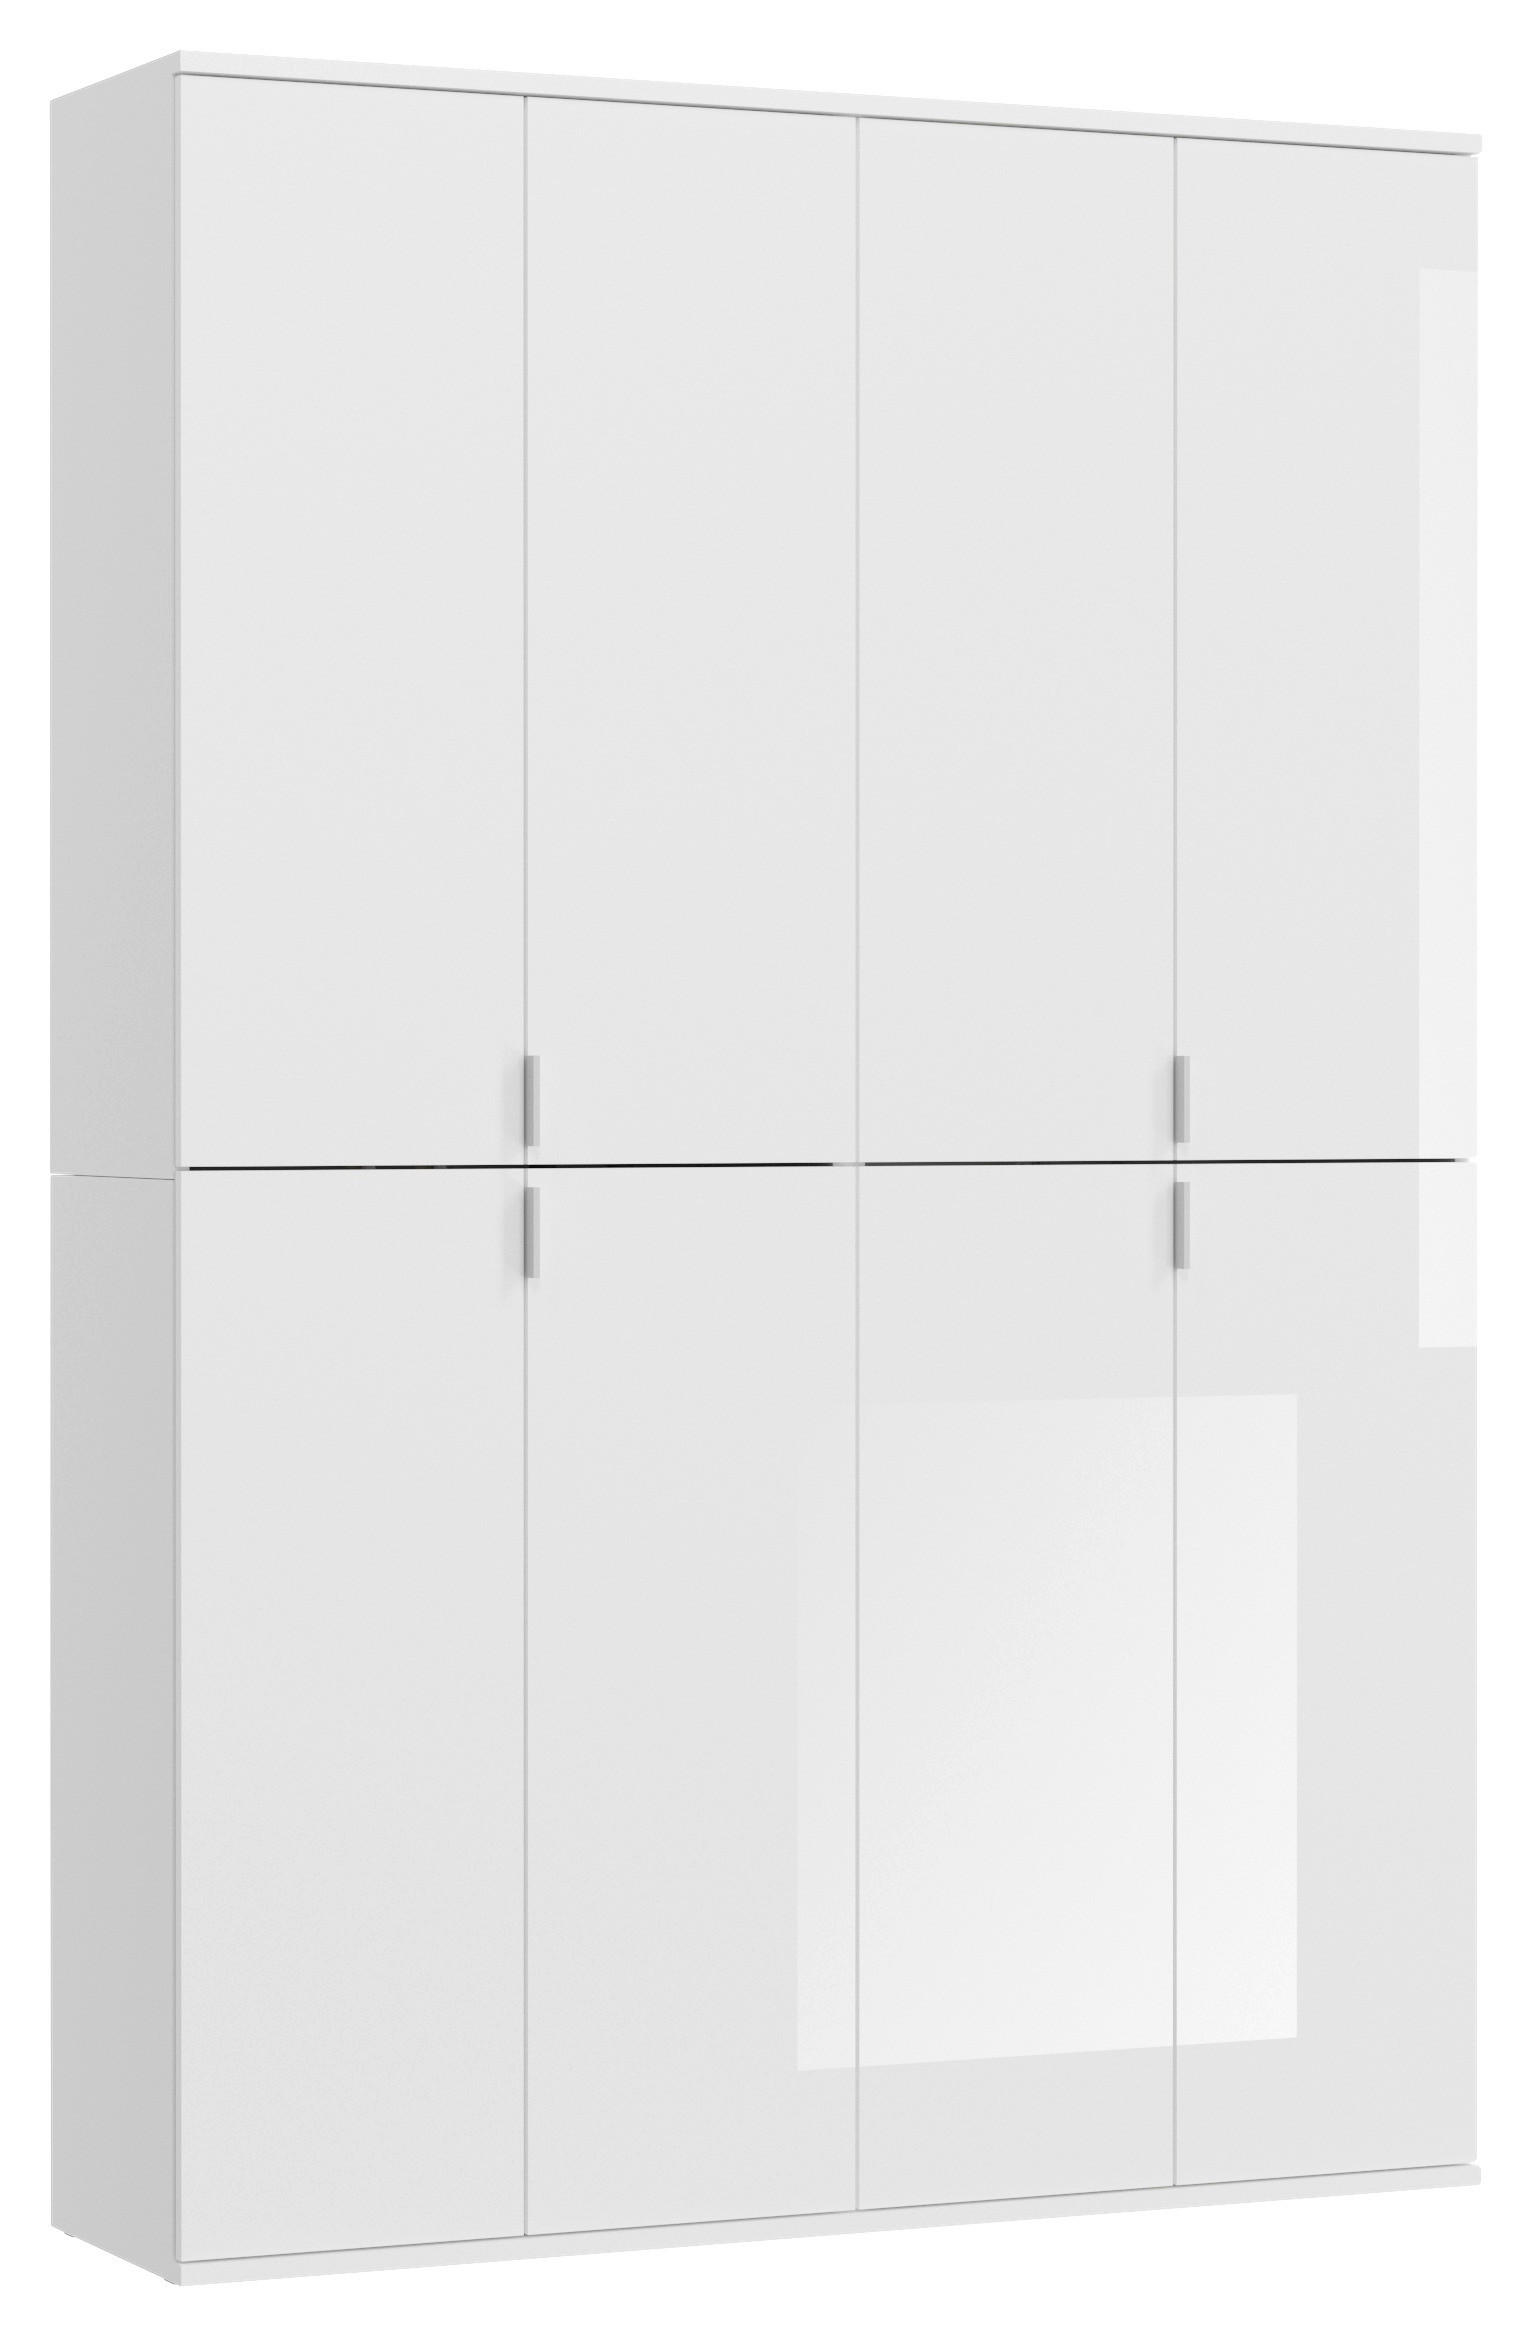 DREHTÜRENSCHRANK 8-türig Weiß  - Chromfarben/Weiß Hochglanz, MODERN, Holzwerkstoff/Metall (122/193/34cm) - MID.YOU